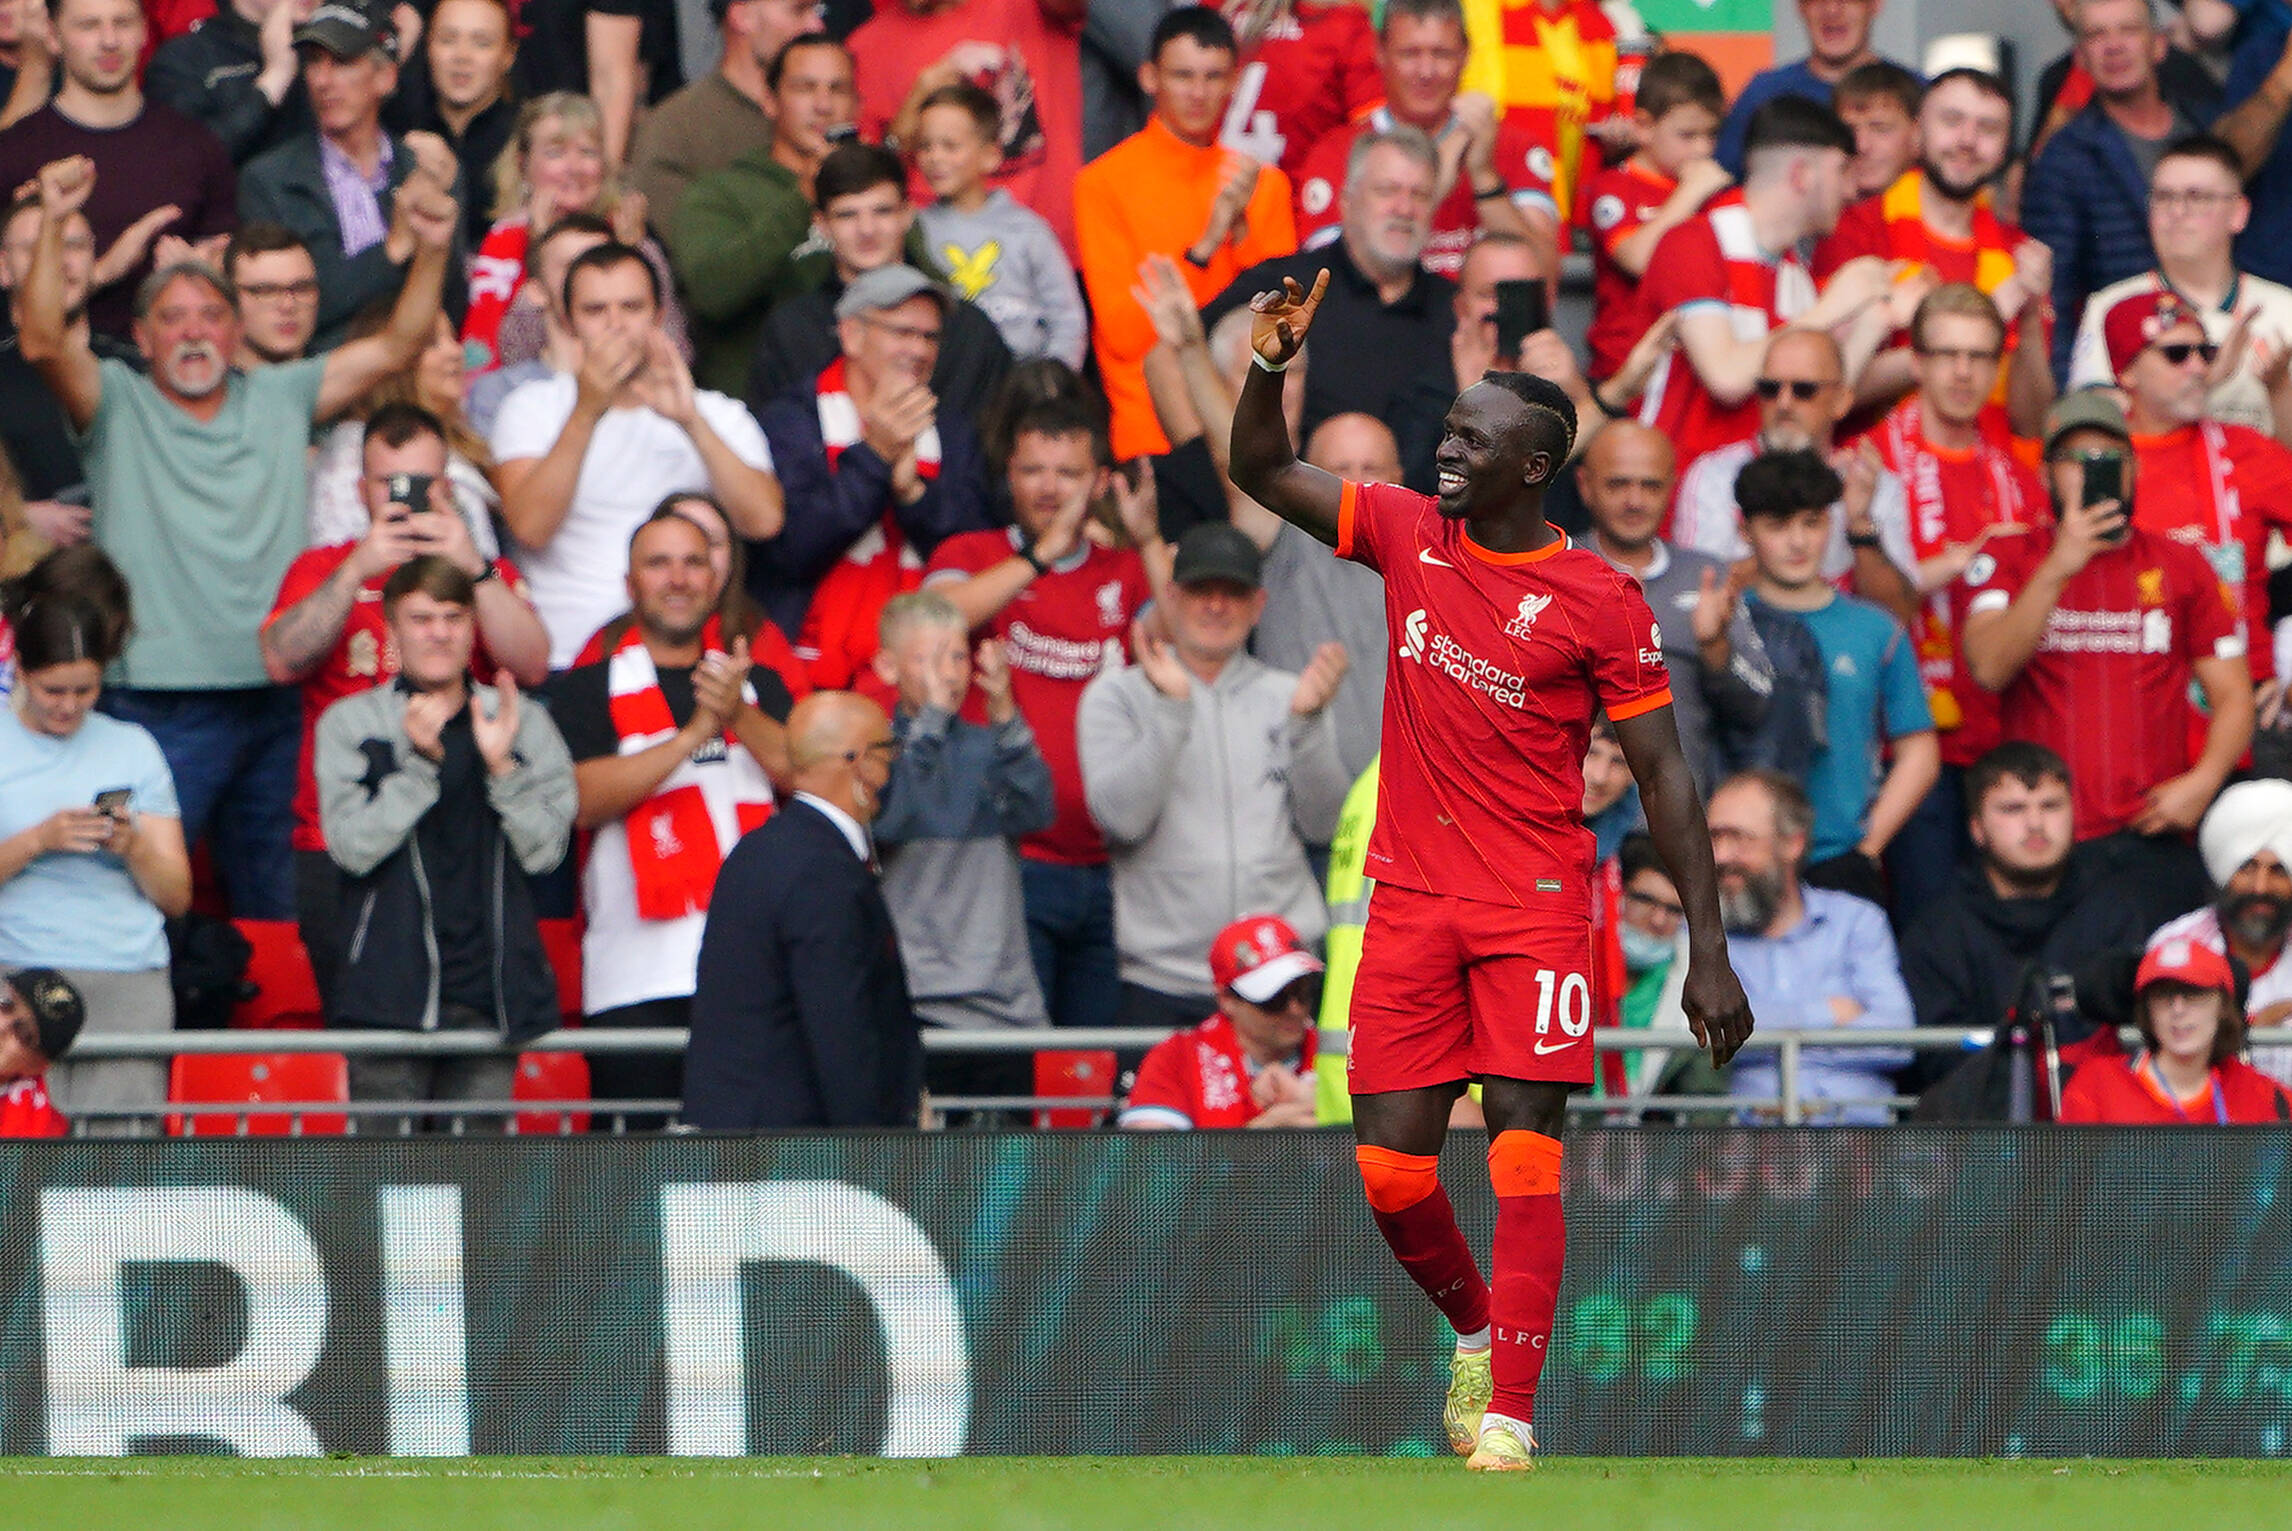 Liverpool FC: Mané set a new Premier League record